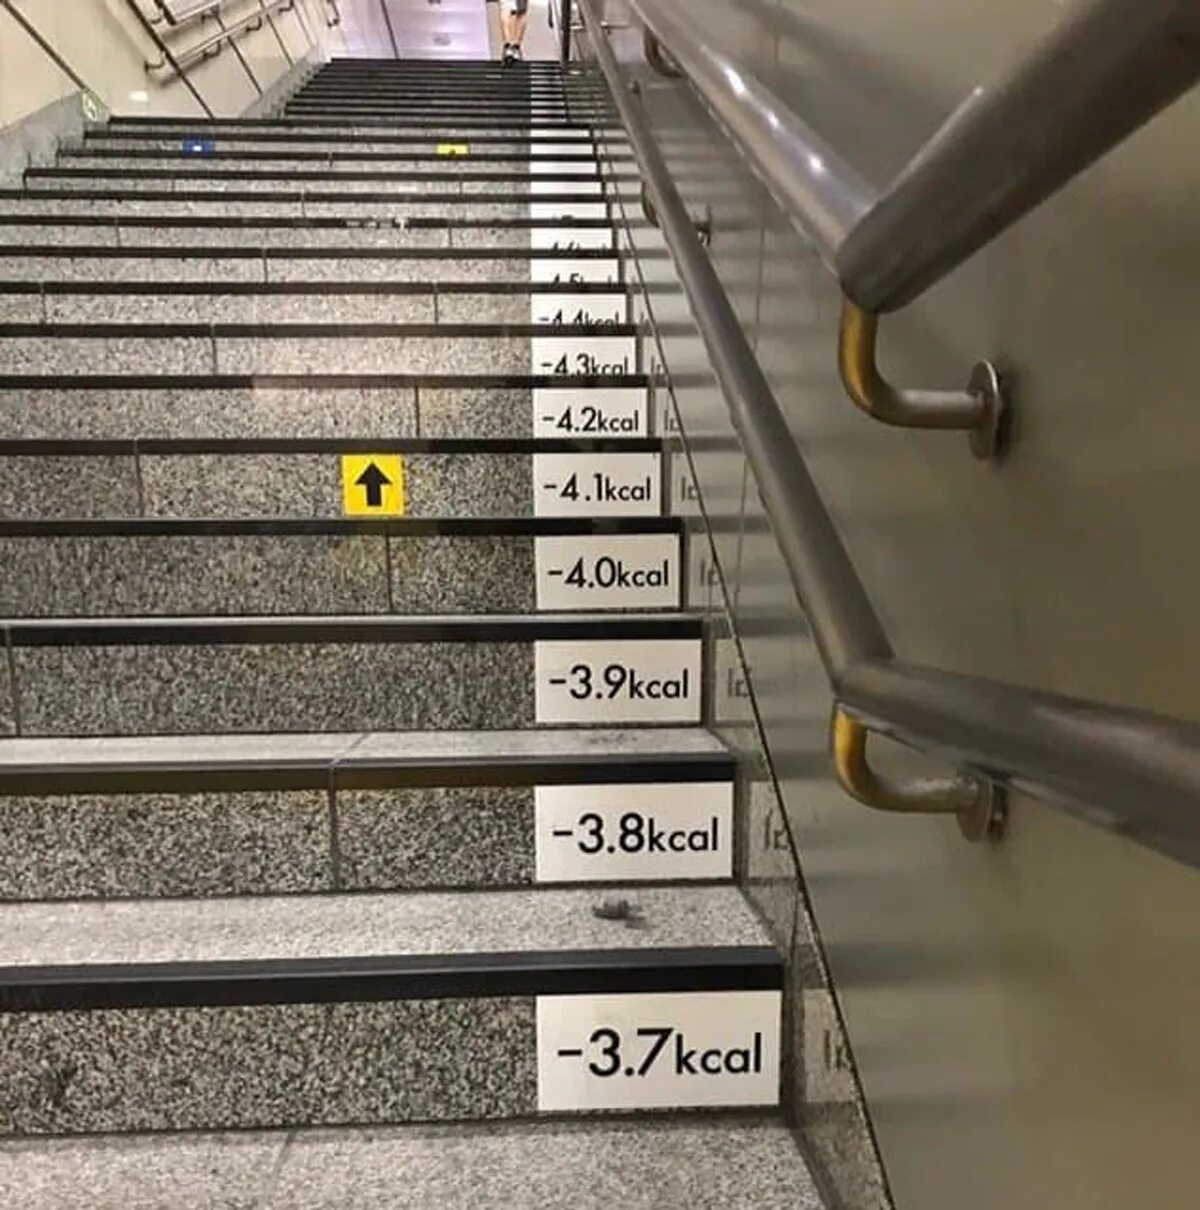 Калории подняться по лестнице. Надписи на ступенях лестницы. Надписи на ступеньках лестницы. Ступеньки в метро. Наклейки на ступени лестницы.